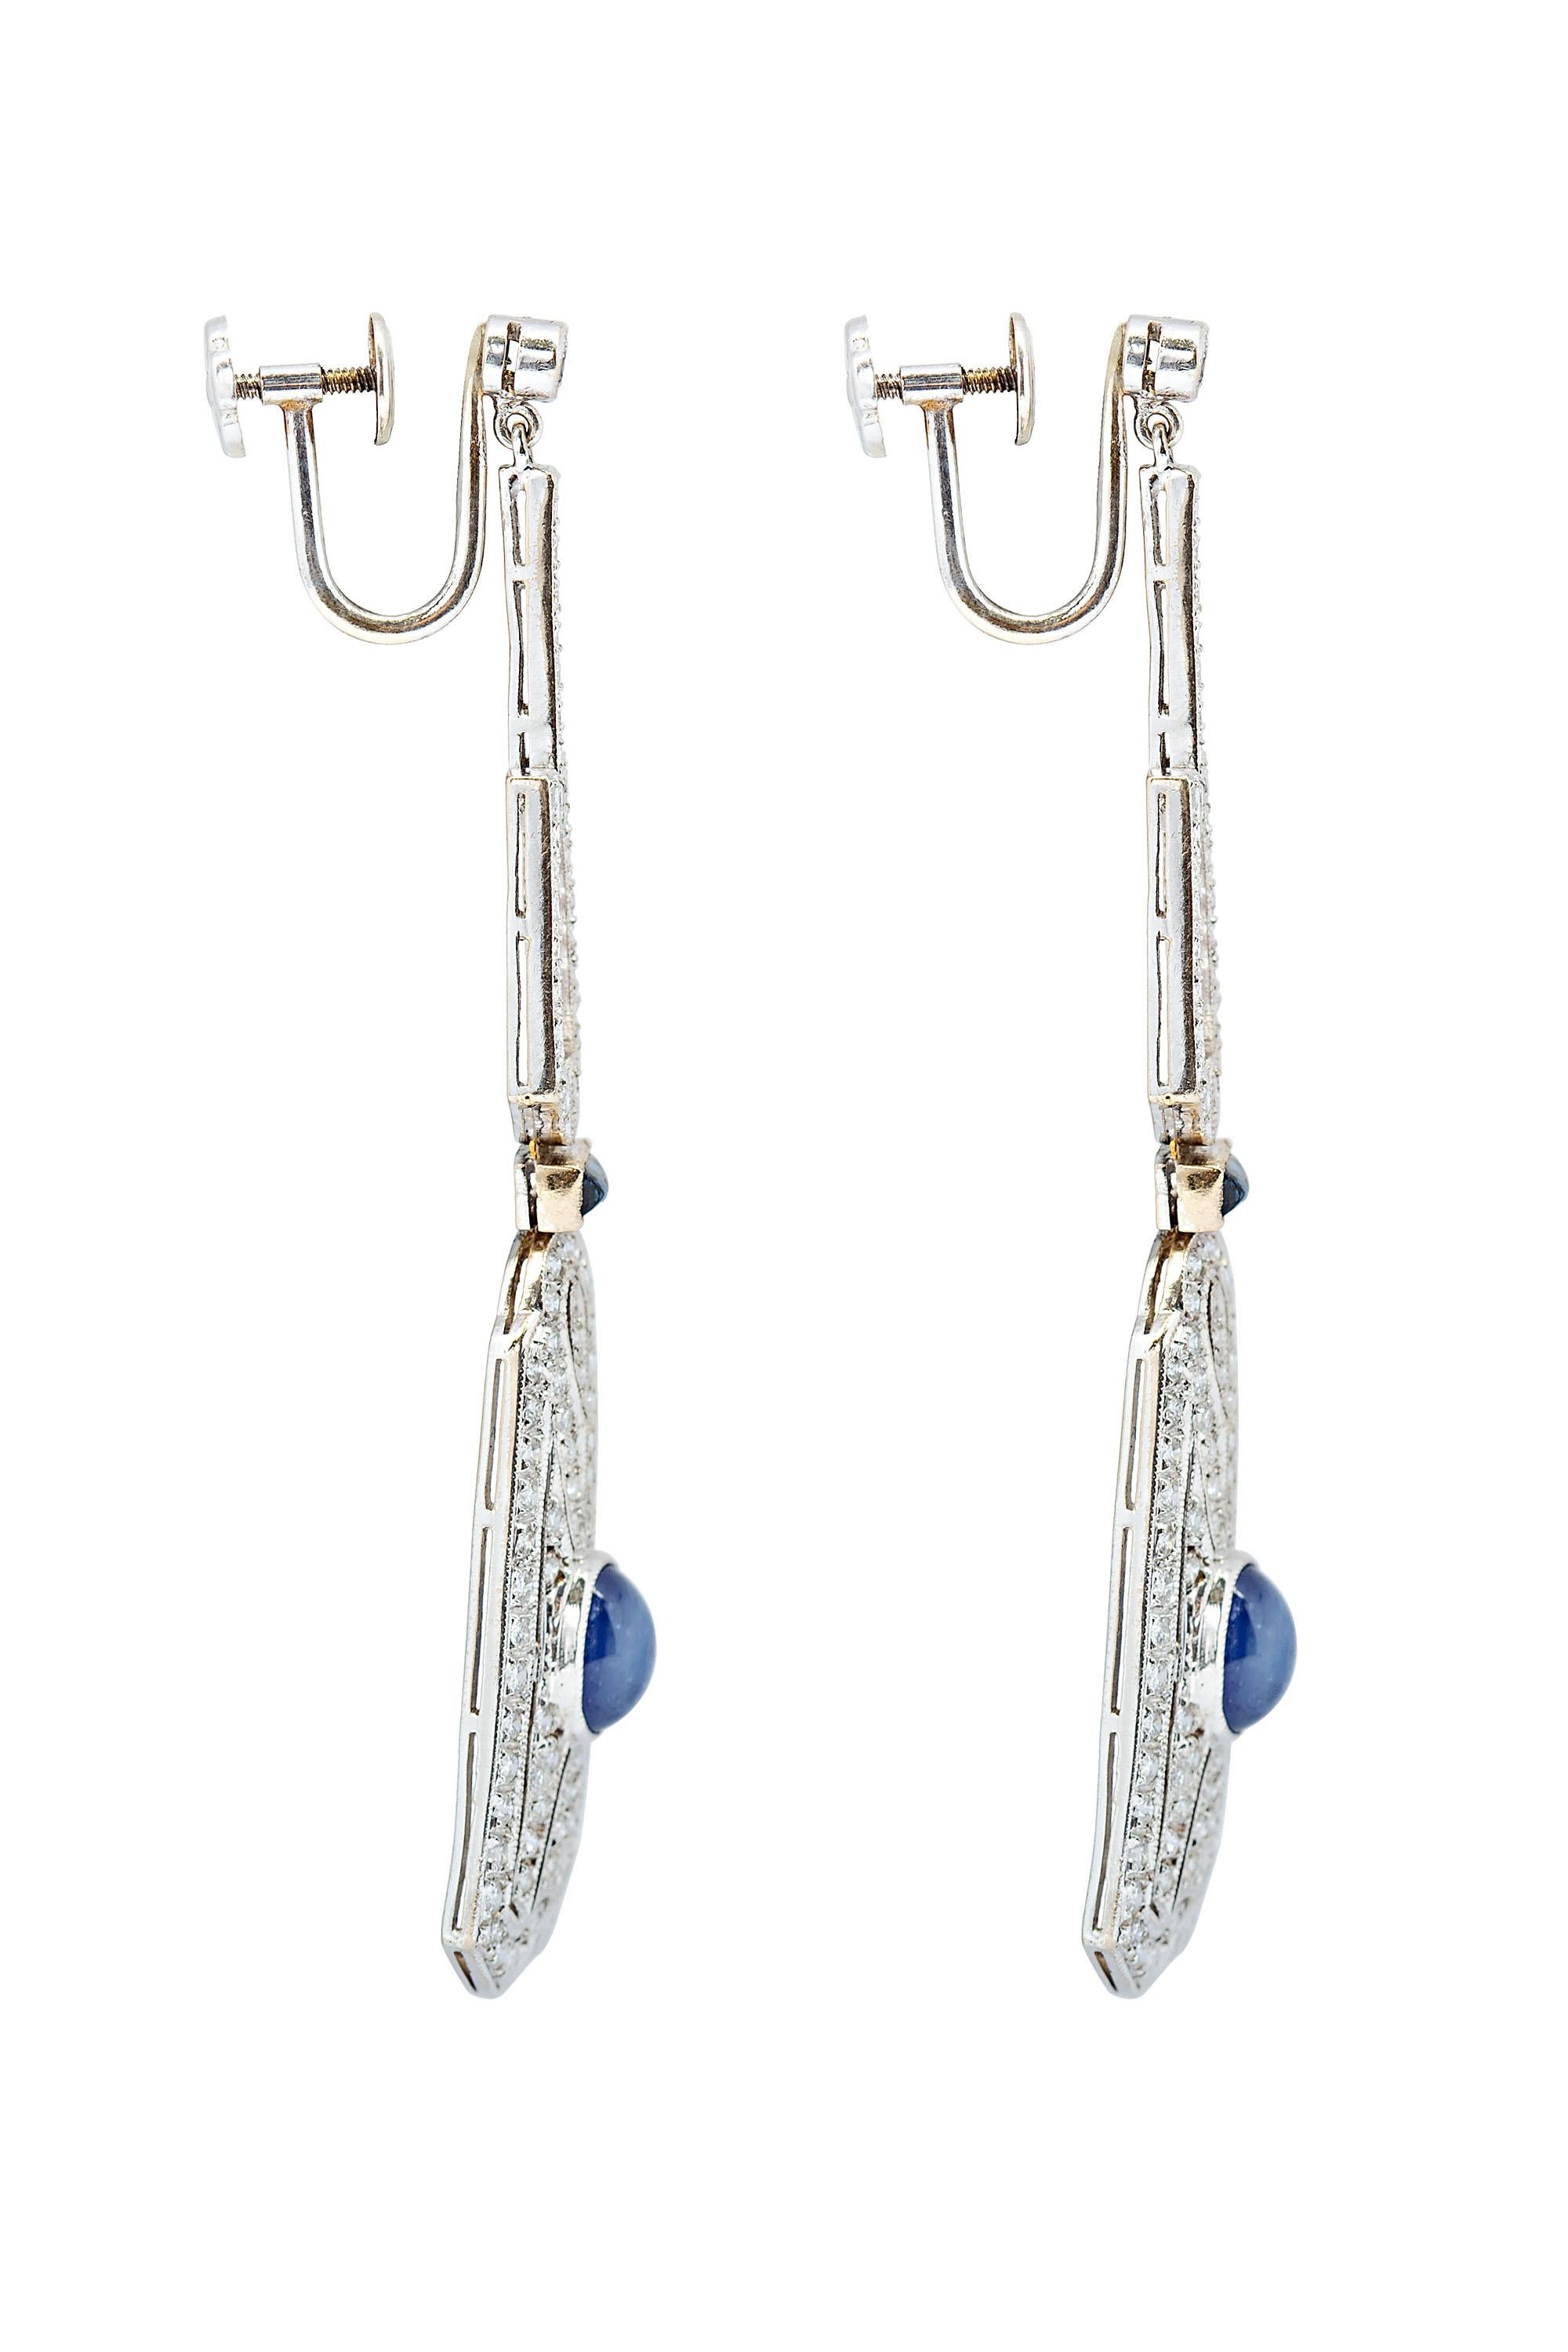 Ces boucles d'oreilles sensationnelles et magnifiquement détaillées de style Art déco sont composées de gouttes géométriques pavées de diamants, chacune mettant en valeur un saphir ovale bleu vif taillé en cabochon. Les gouttes sont suspendues par